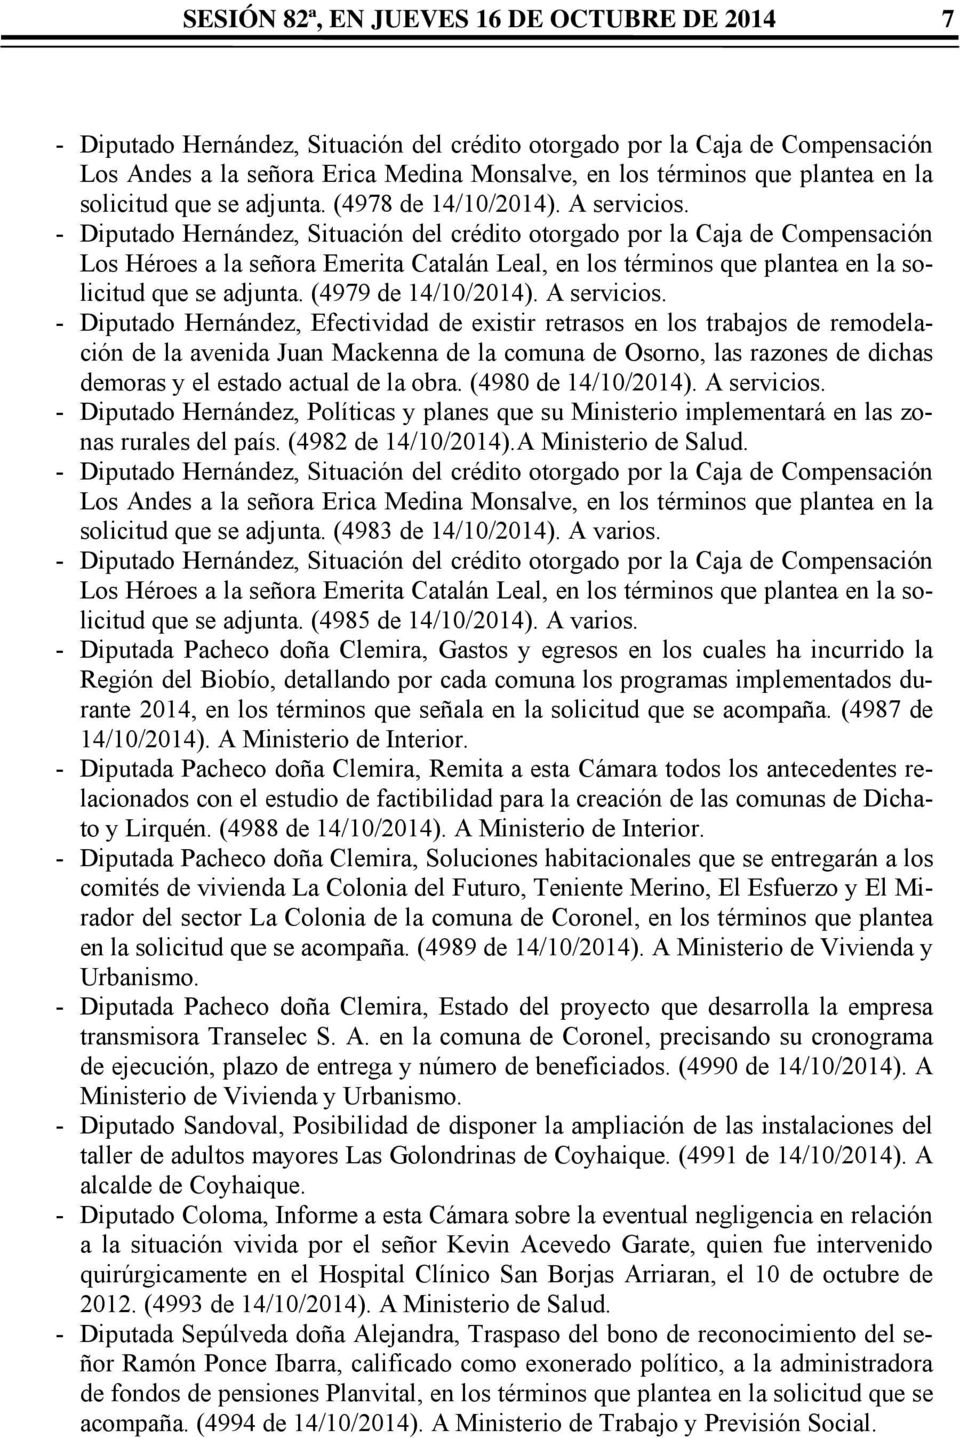 - Diputado Hernández, Situación del crédito otorgado por la Caja de Compensación Los Héroes a la señora Emerita Catalán Leal, en los términos que plantea en la solicitud que se adjunta.